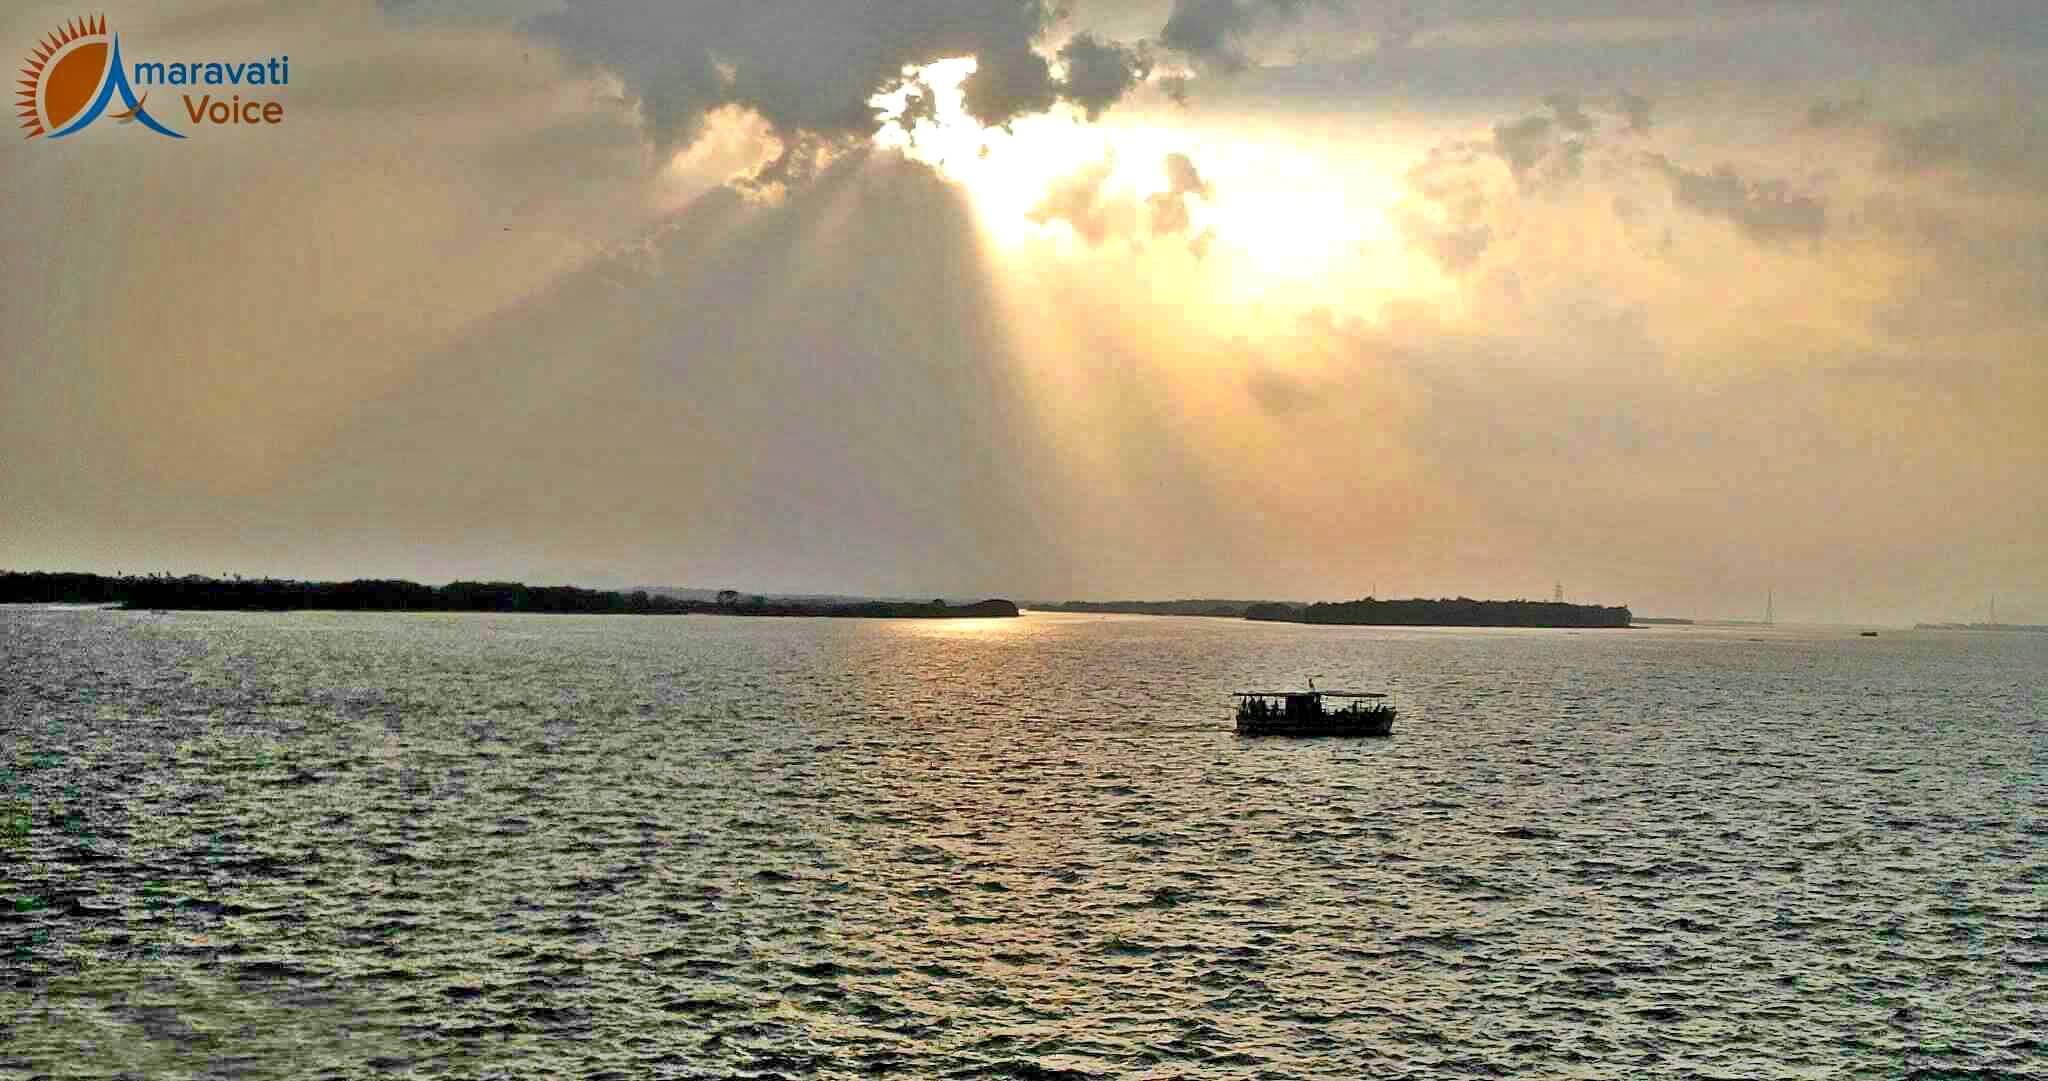 krishna river early morning vijayawada 17062016